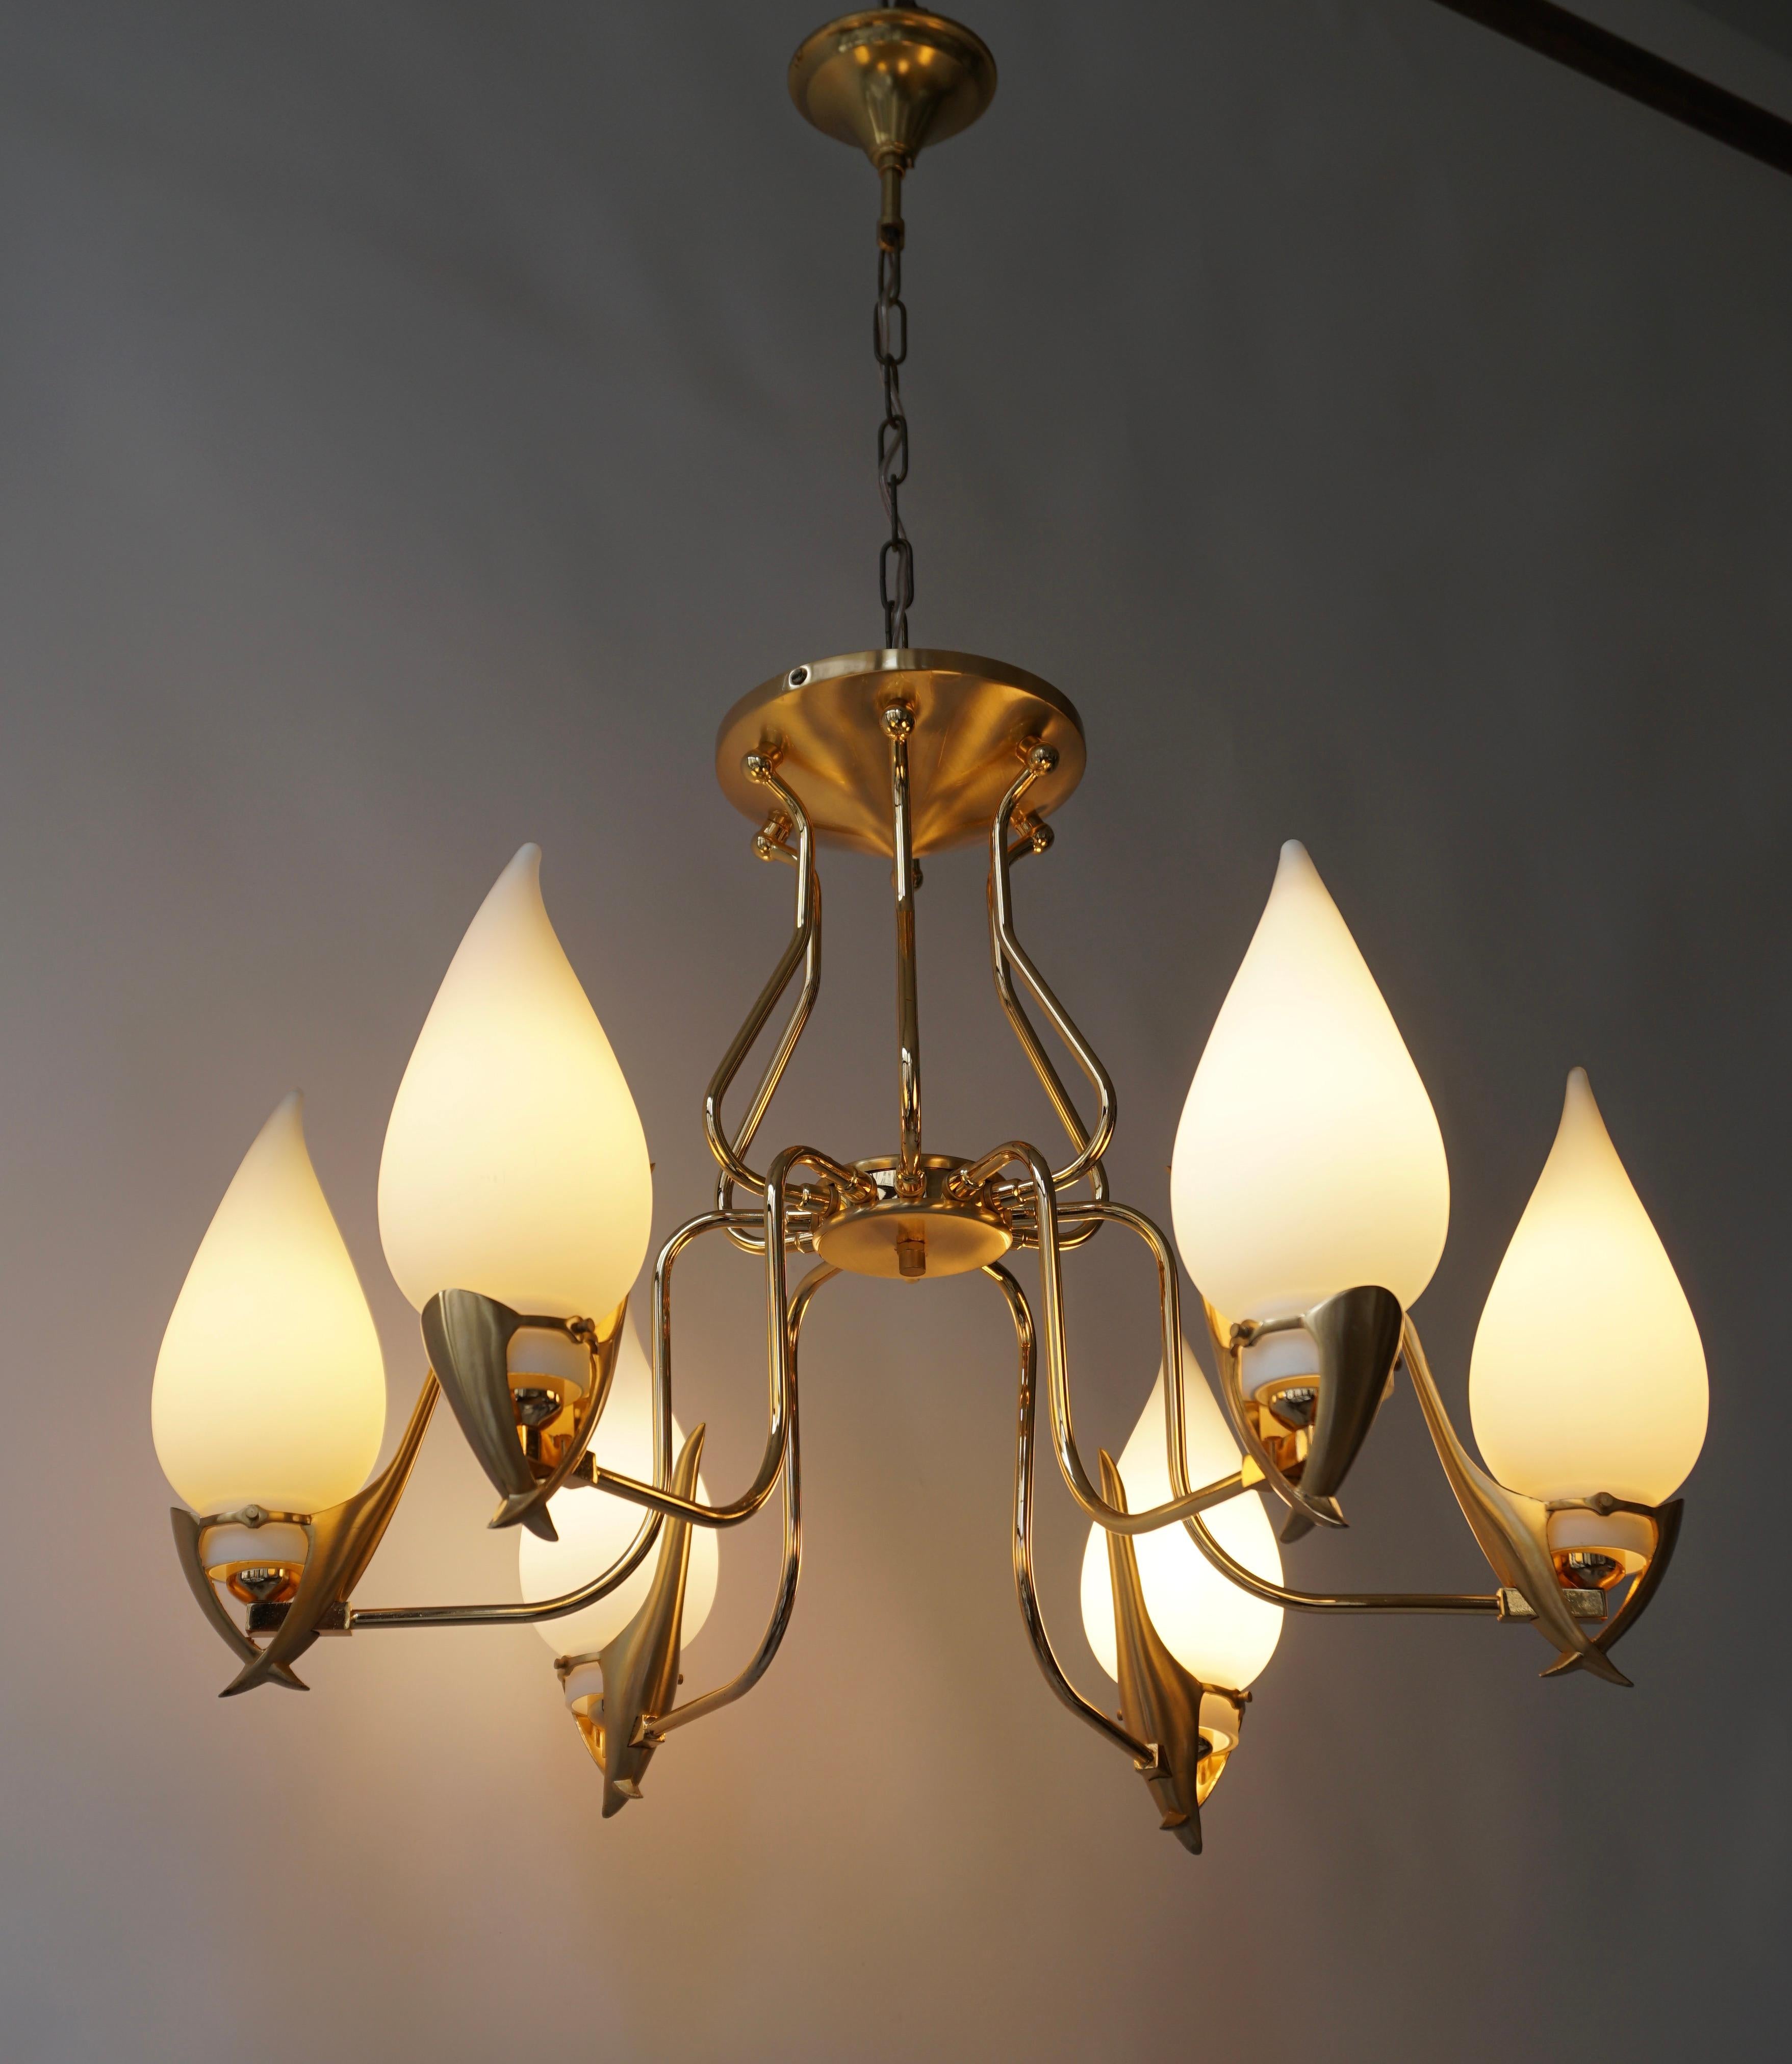 Eleganter Kronleuchter mit sechs Lampenschirmen aus Opalglas, getragen von einem vergoldeten Beschlag von Franco Luce, Murano, Italien, 1970er Jahre.

Durchmesser 25 Zoll - 64 cm.
Höhe Halterung 19 Zoll - 48 cm.
Die Gesamthöhe einschließlich der